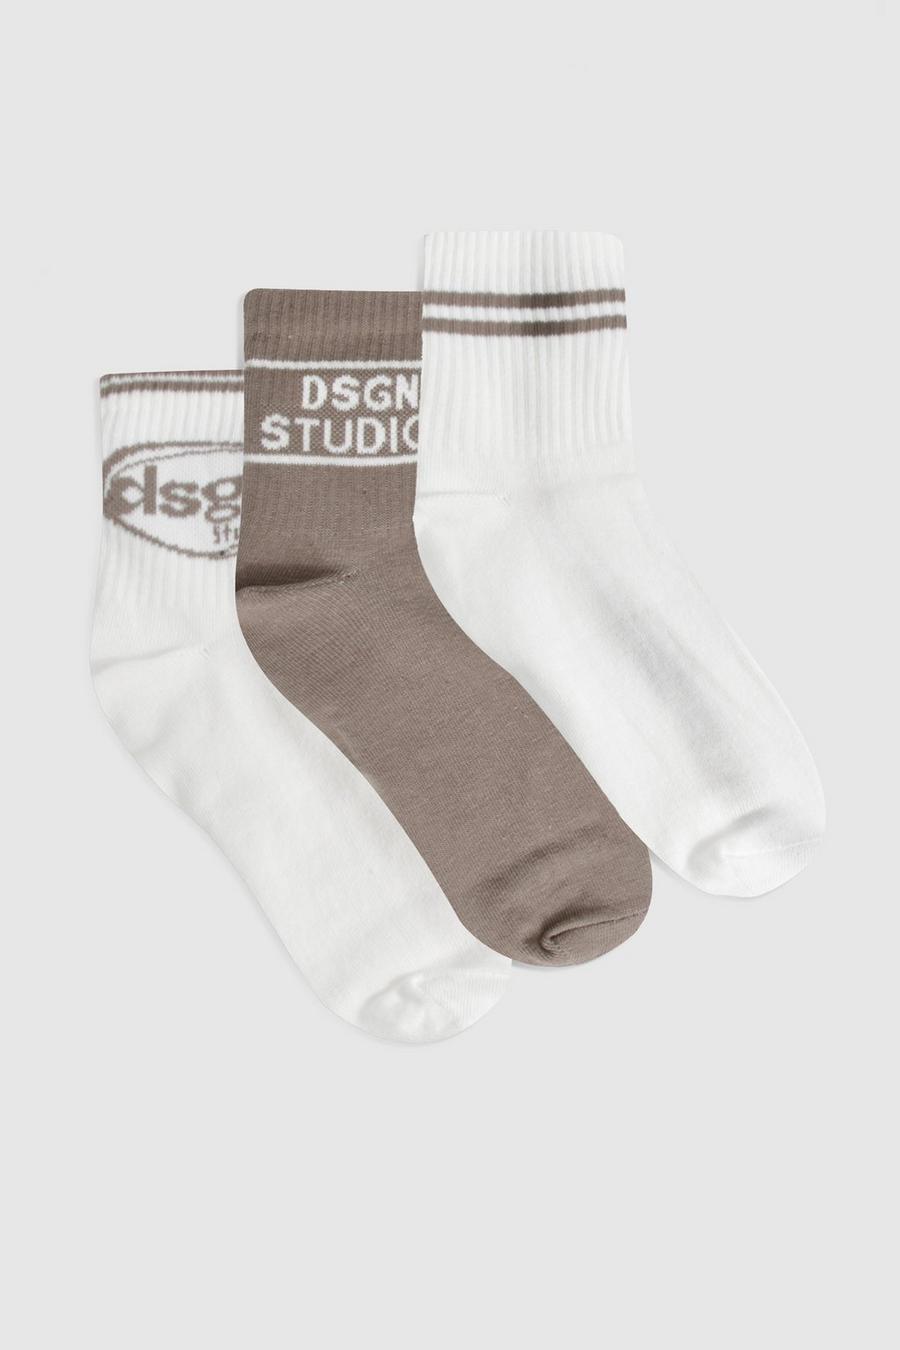 3er-Pack Socken mit Dsgn Studio Print, Beige